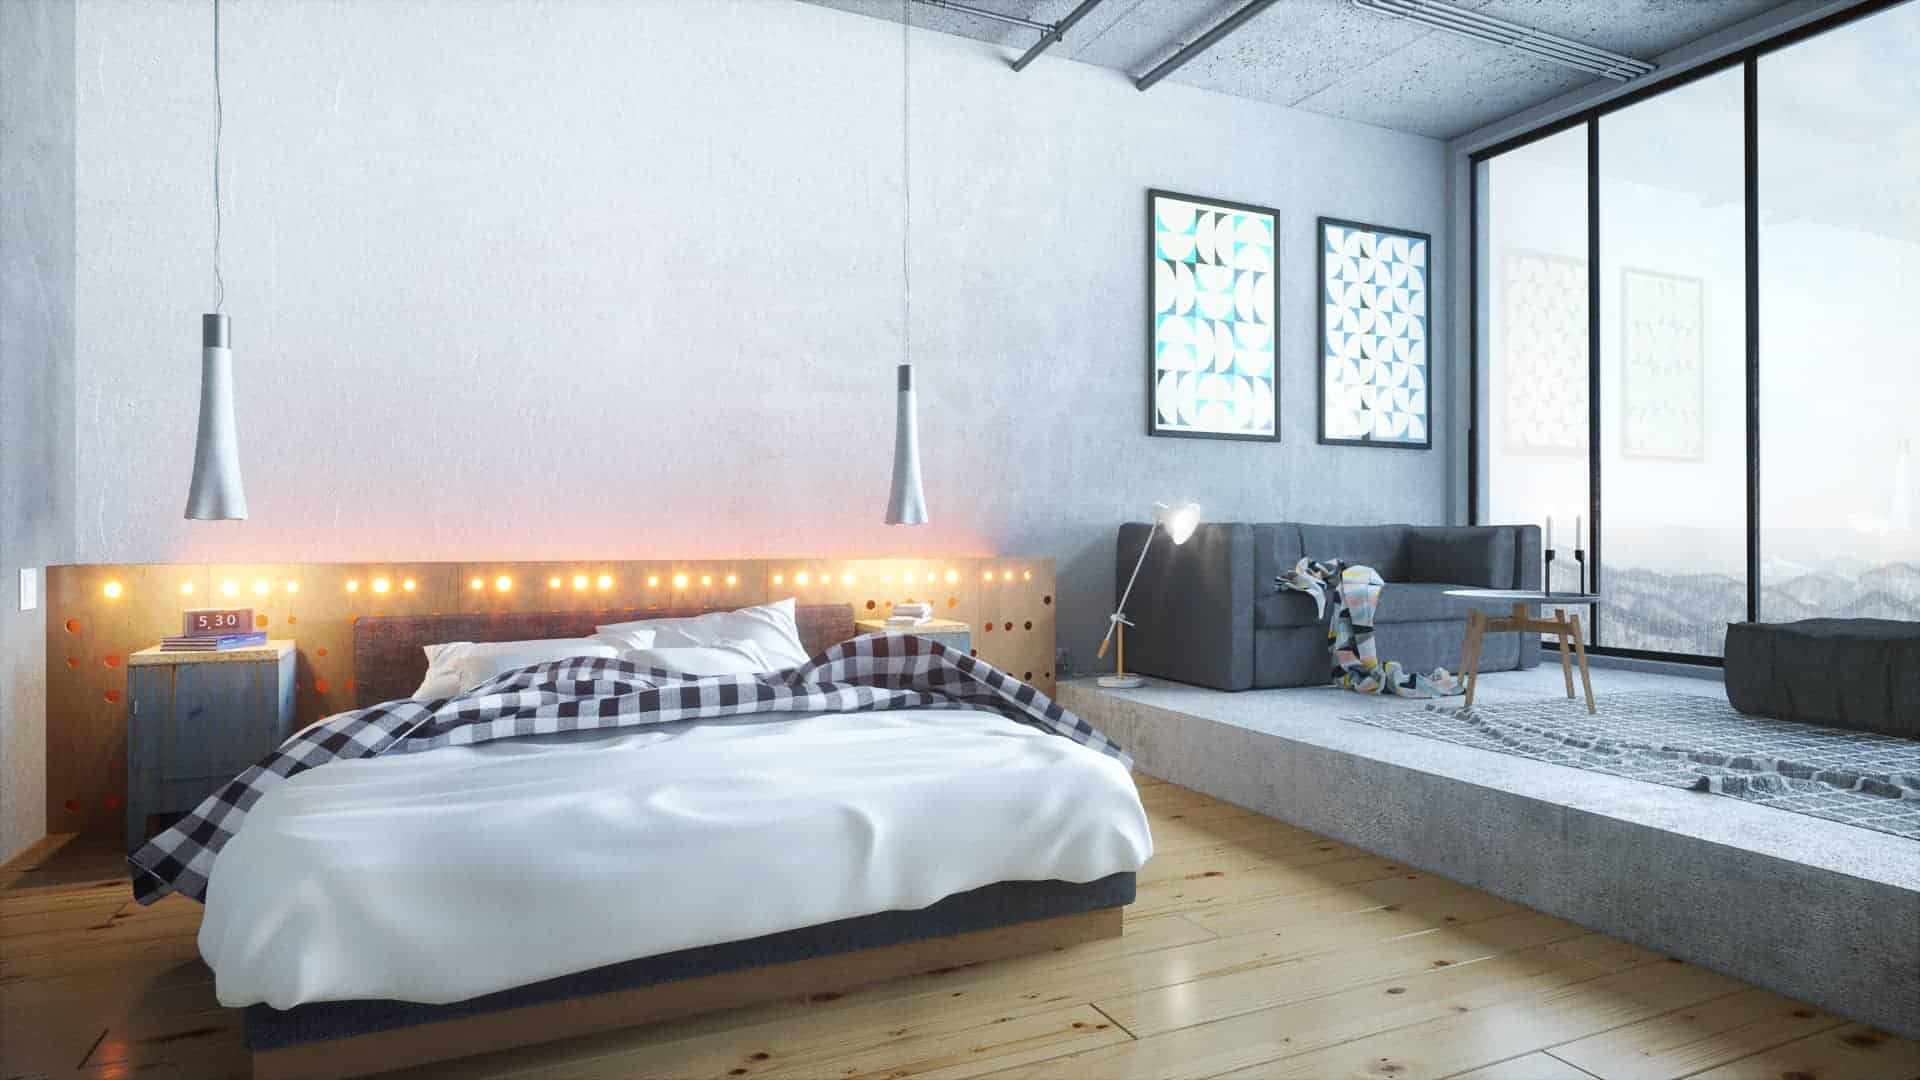 Industrial Bedroom - Design Ideas